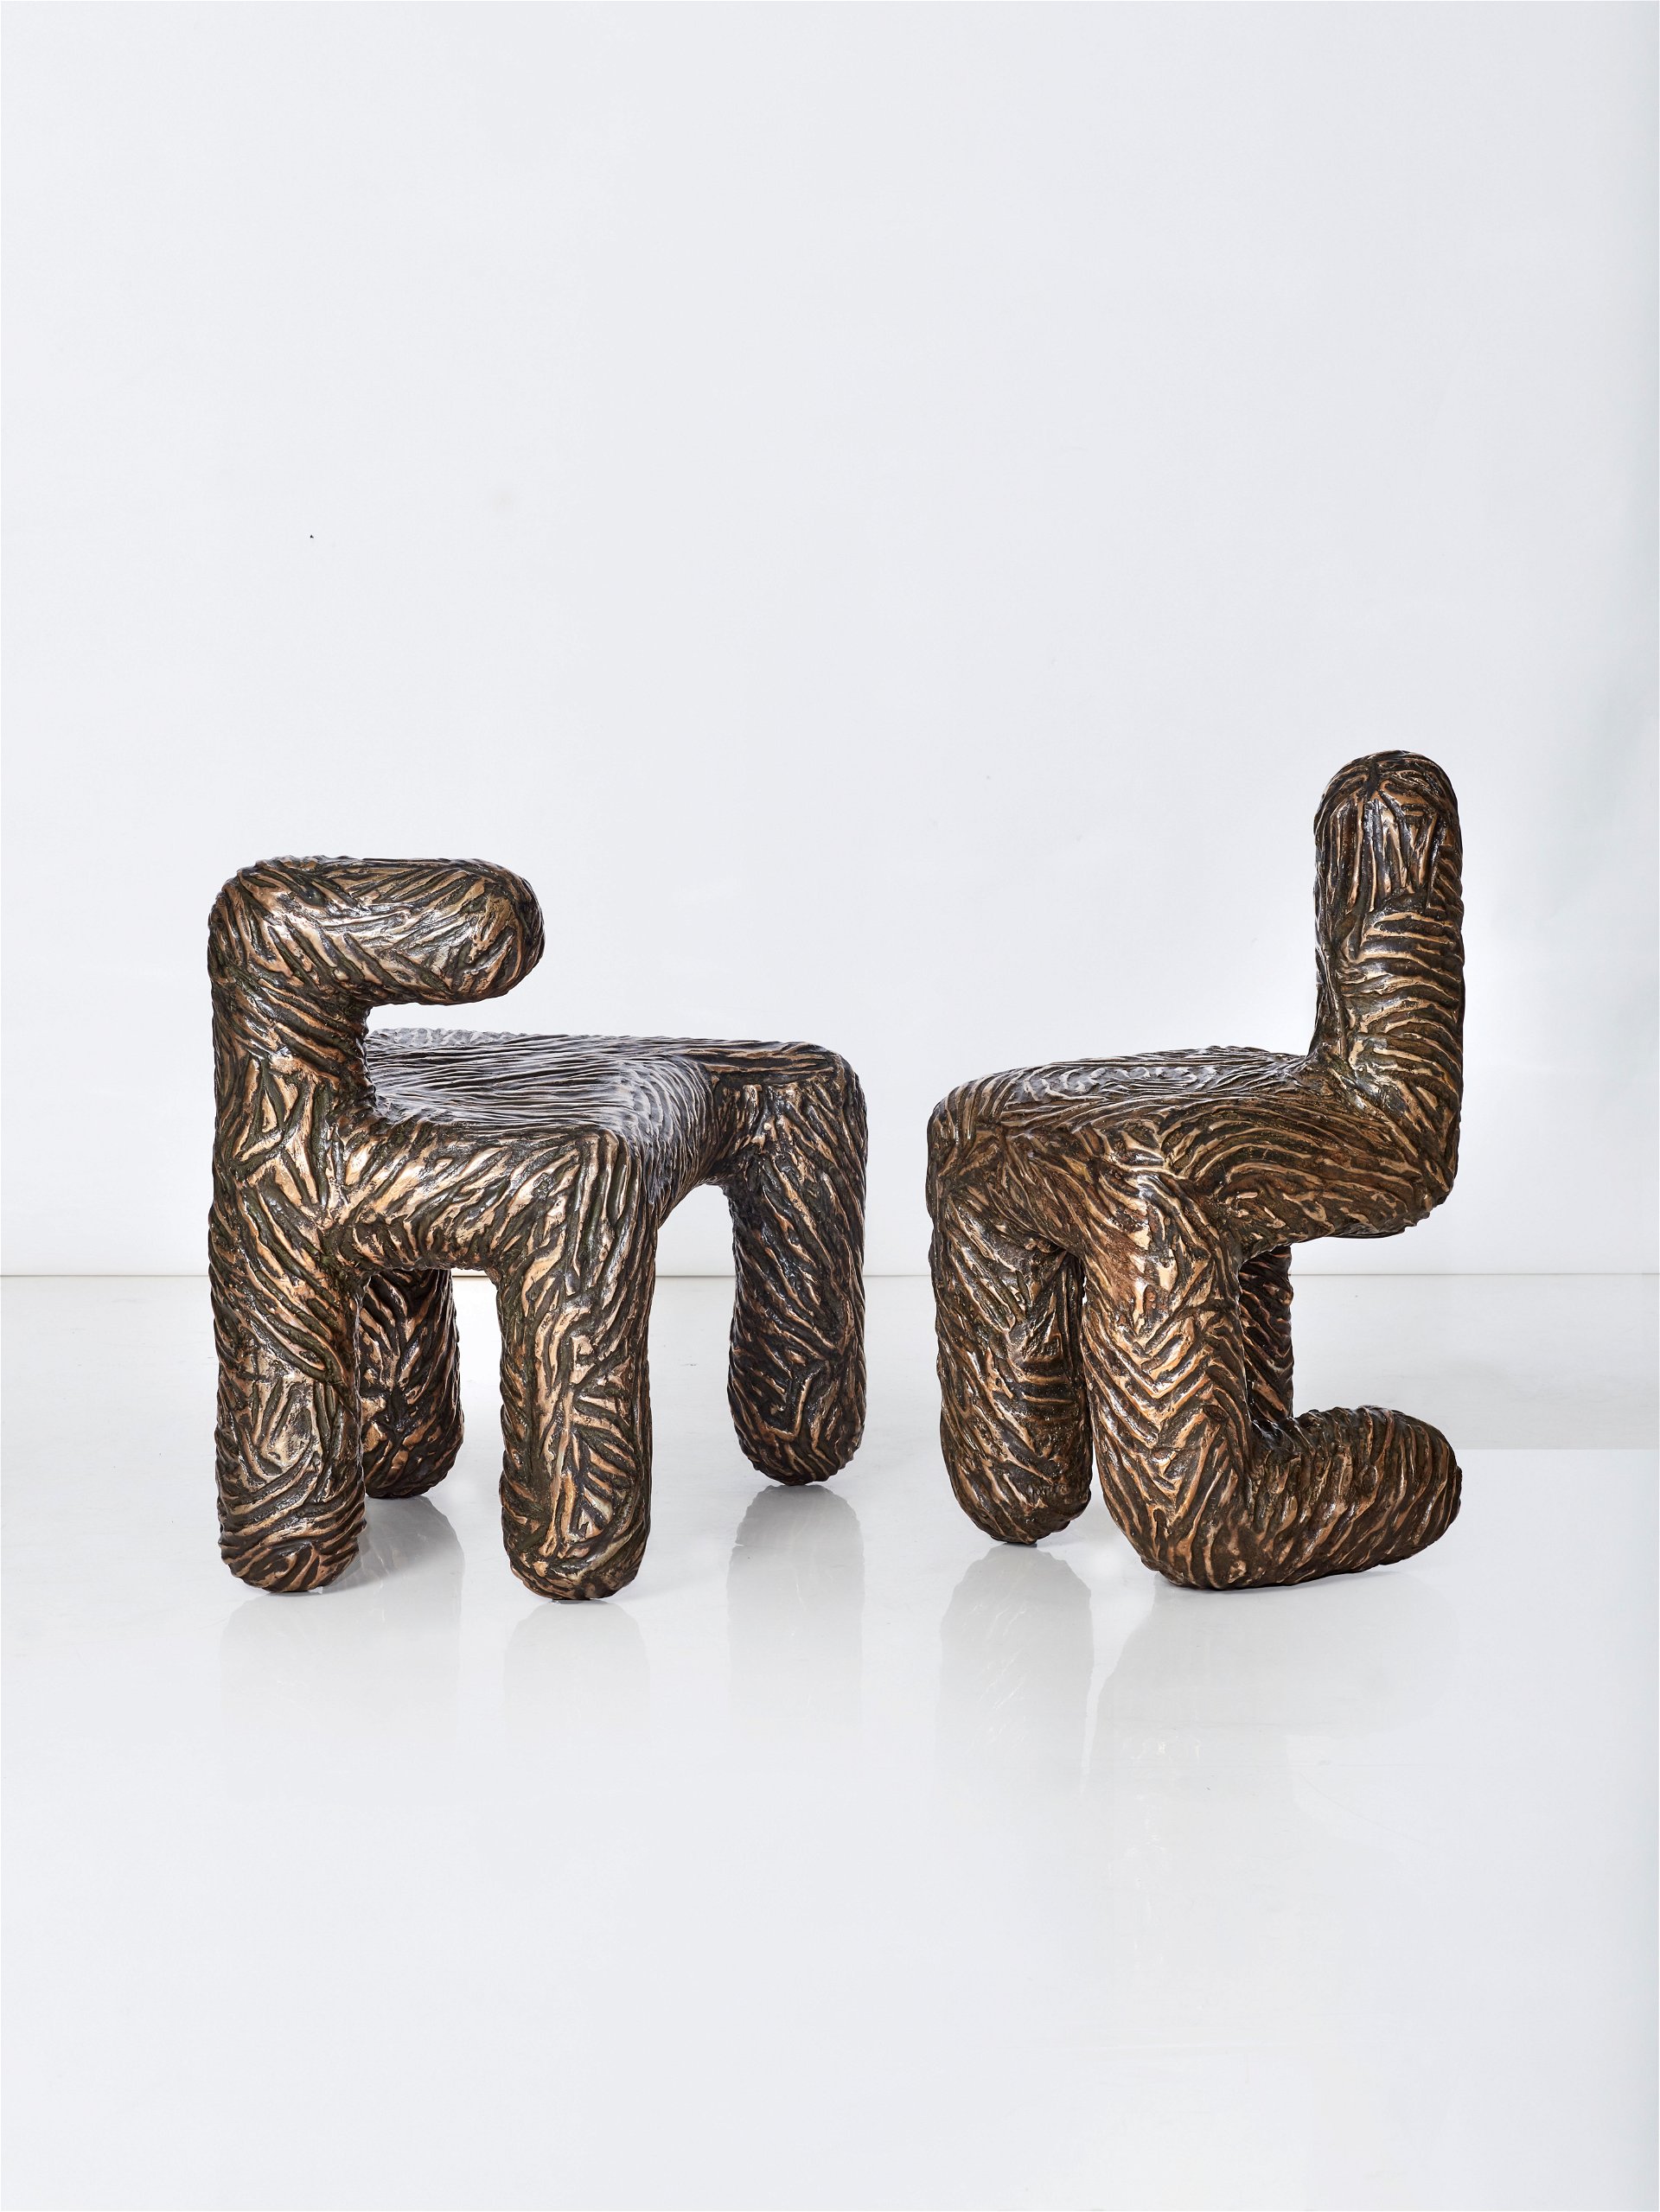 Animalische Stühle: Ist es eine Skulptur oder ein Stuhl? Der südafrikanische Künstler und Designer Atang Tshikare setzt auf Handarbeit. Seine Stücke sind limitiert. southernguild.co.za